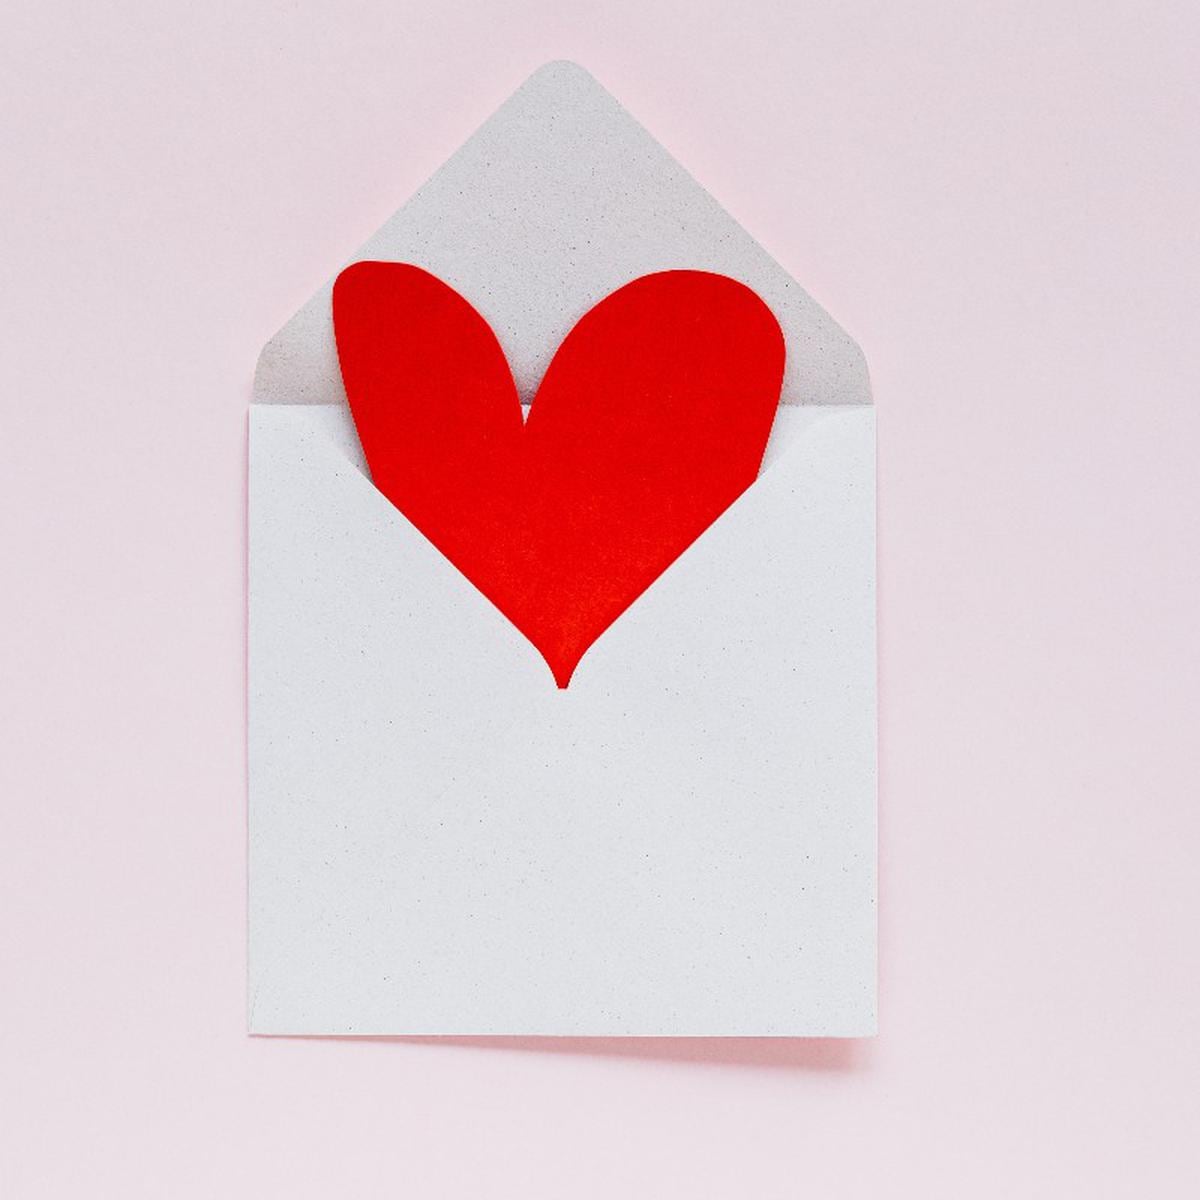 Día de San Valentín: ¿Aún no sabes qué regalar? Te traemos buenas